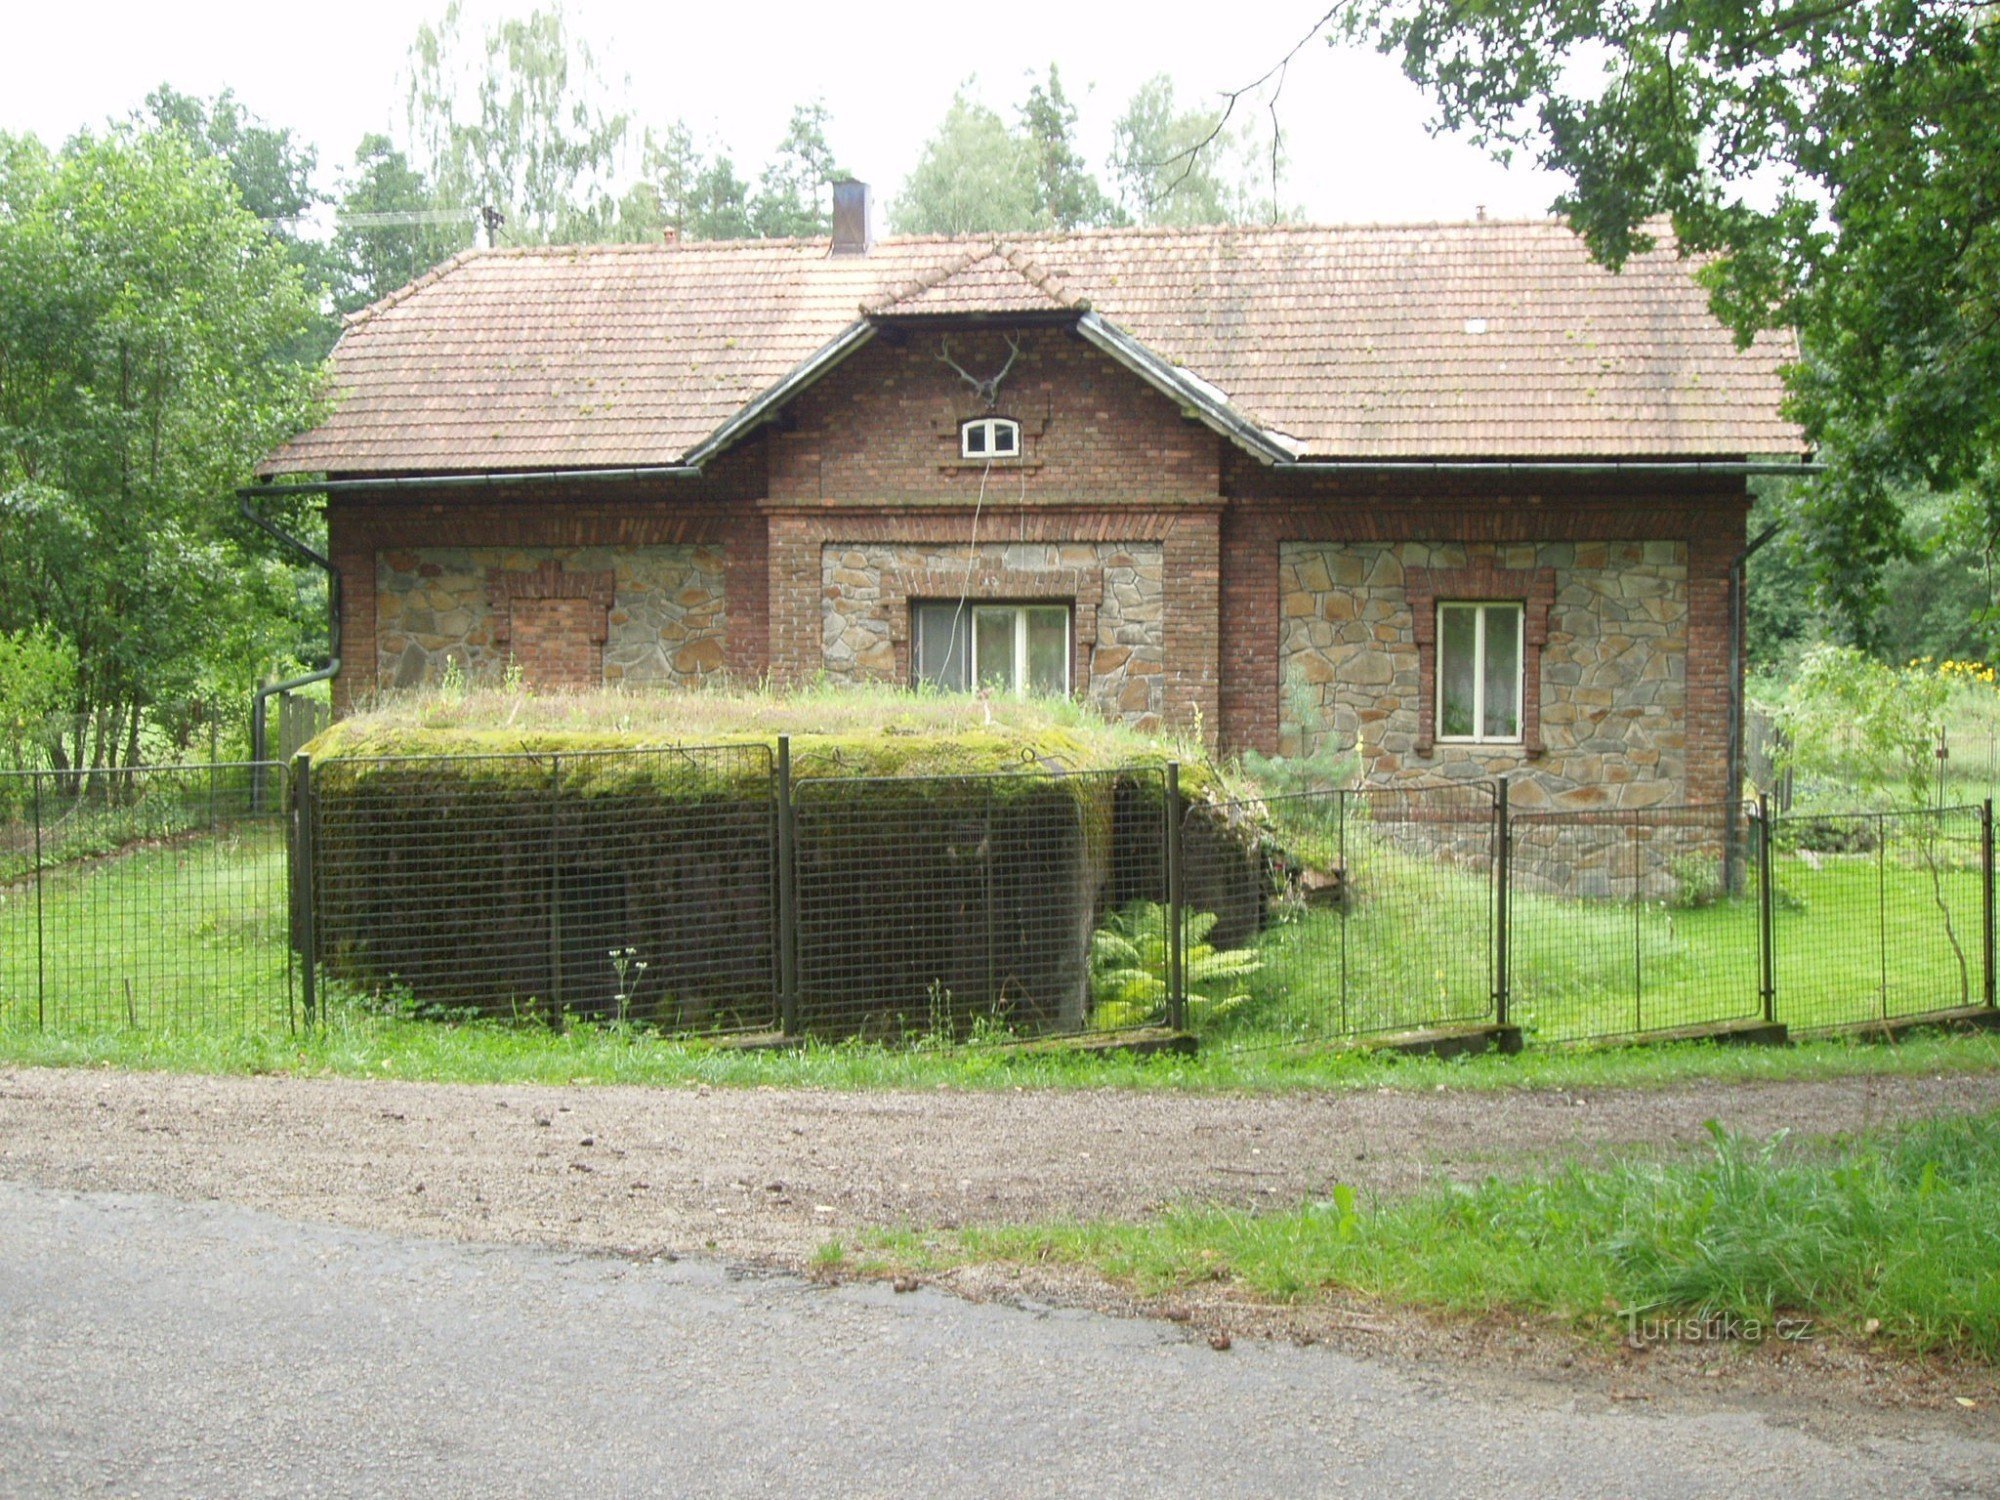 Pháo đài nhẹ "ŘOPÍK" trong khu vườn của khu bảo tồn trò chơi ở địa phương Purkrabí gần Chlum gần Třeboň